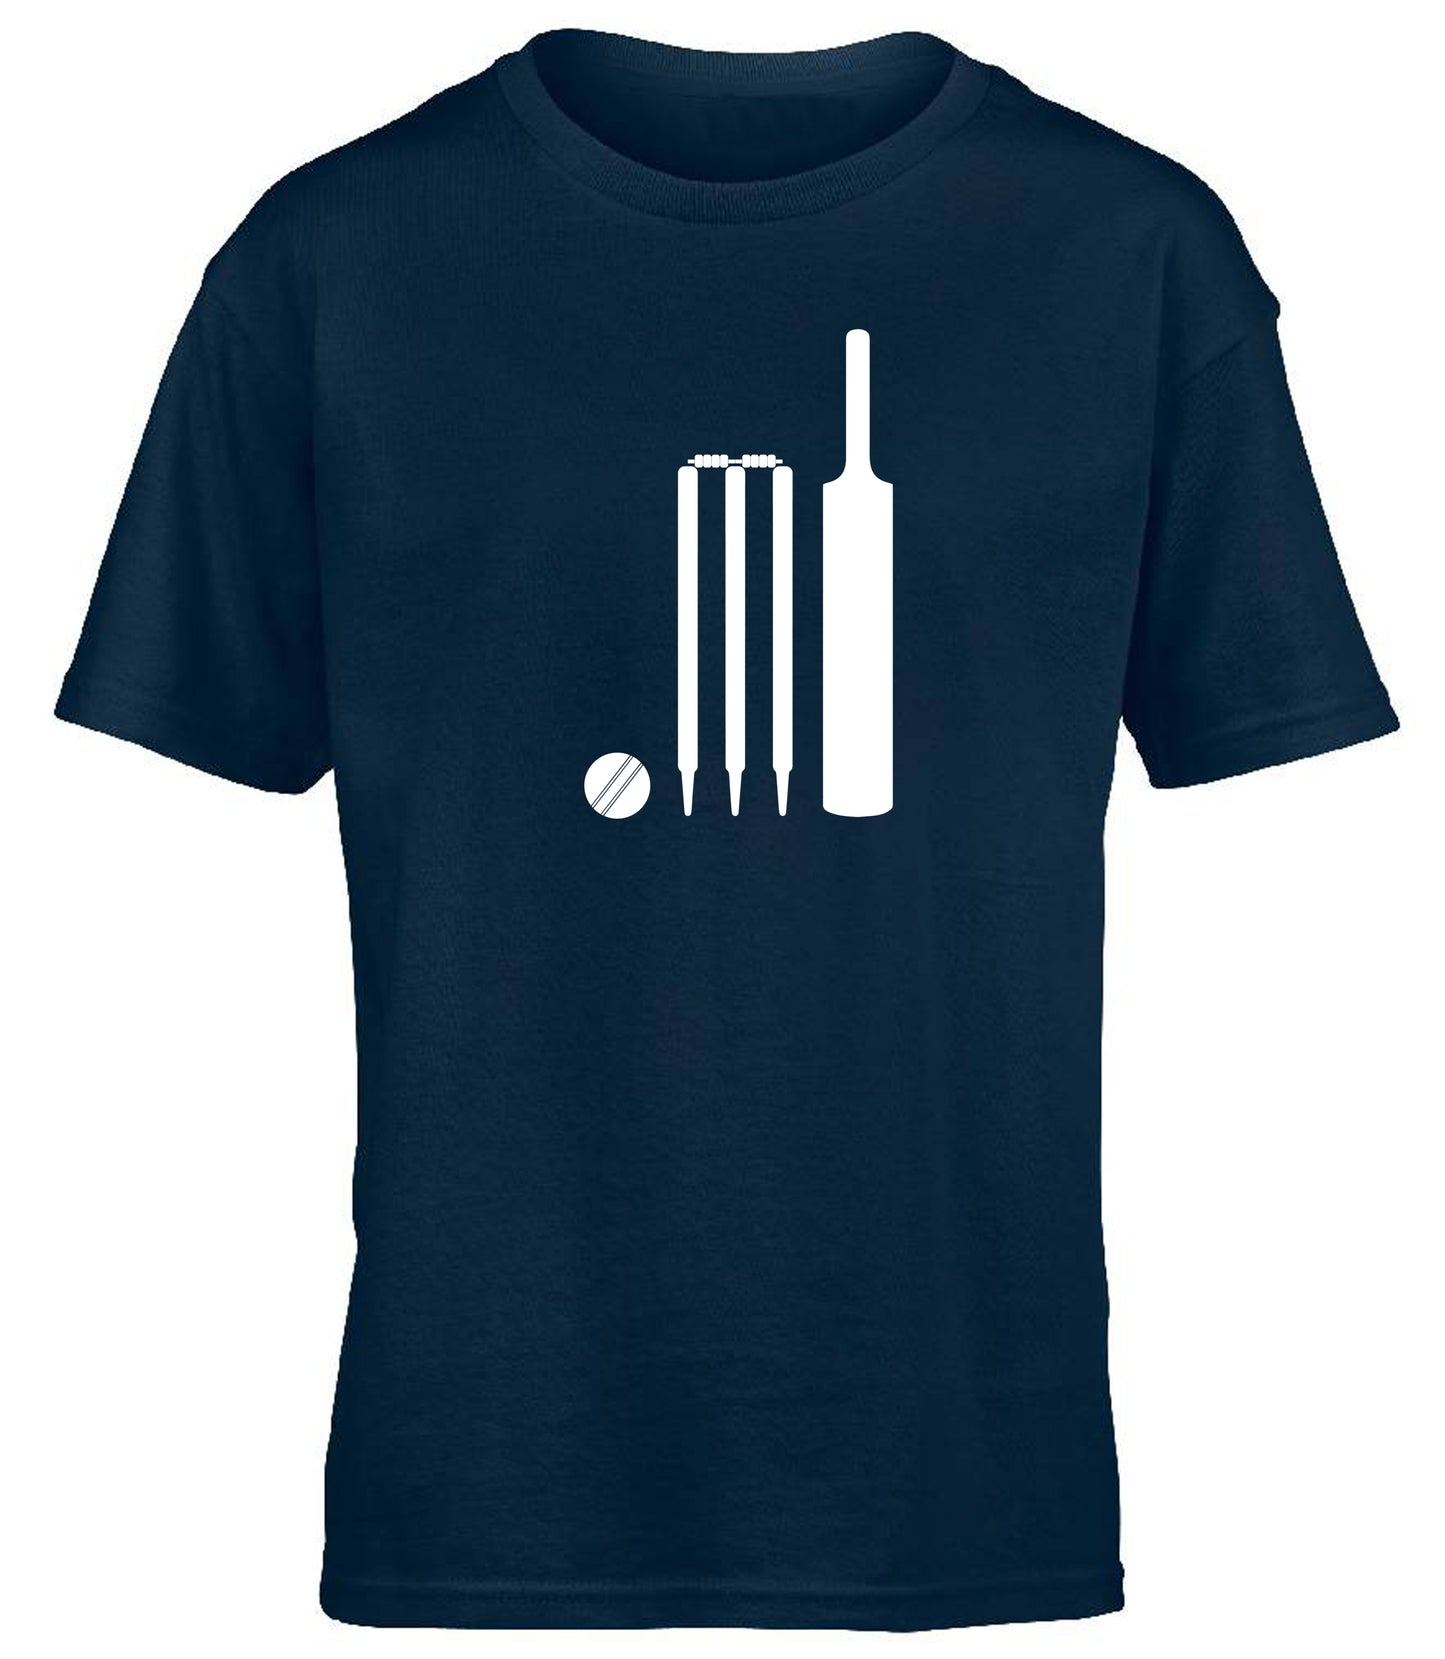 Cricket Bat, Ball and Stumps children's T-shirt